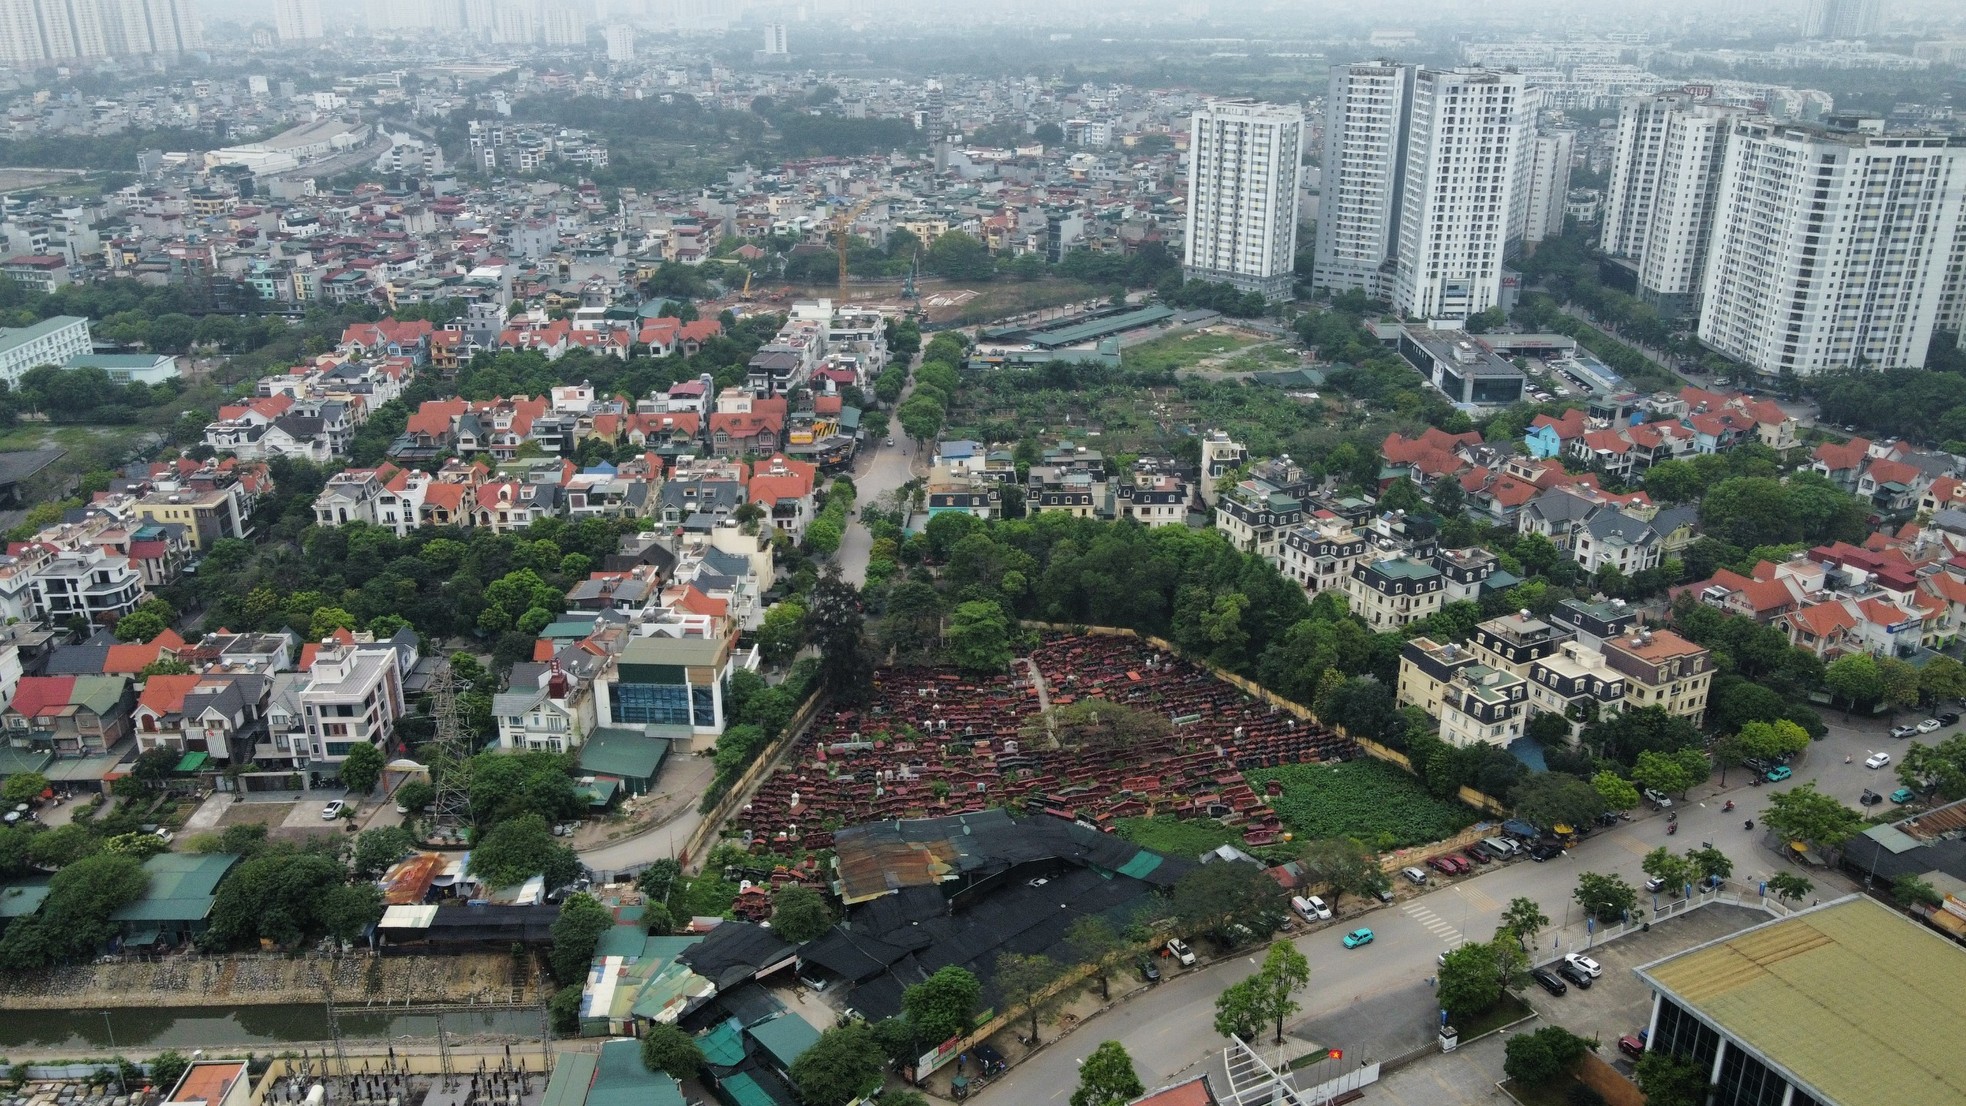 Khu đất 'mọc' bãi xe lậu nơi phường đông dân nhất Hà Nội chuẩn bị xây trường học ảnh 5